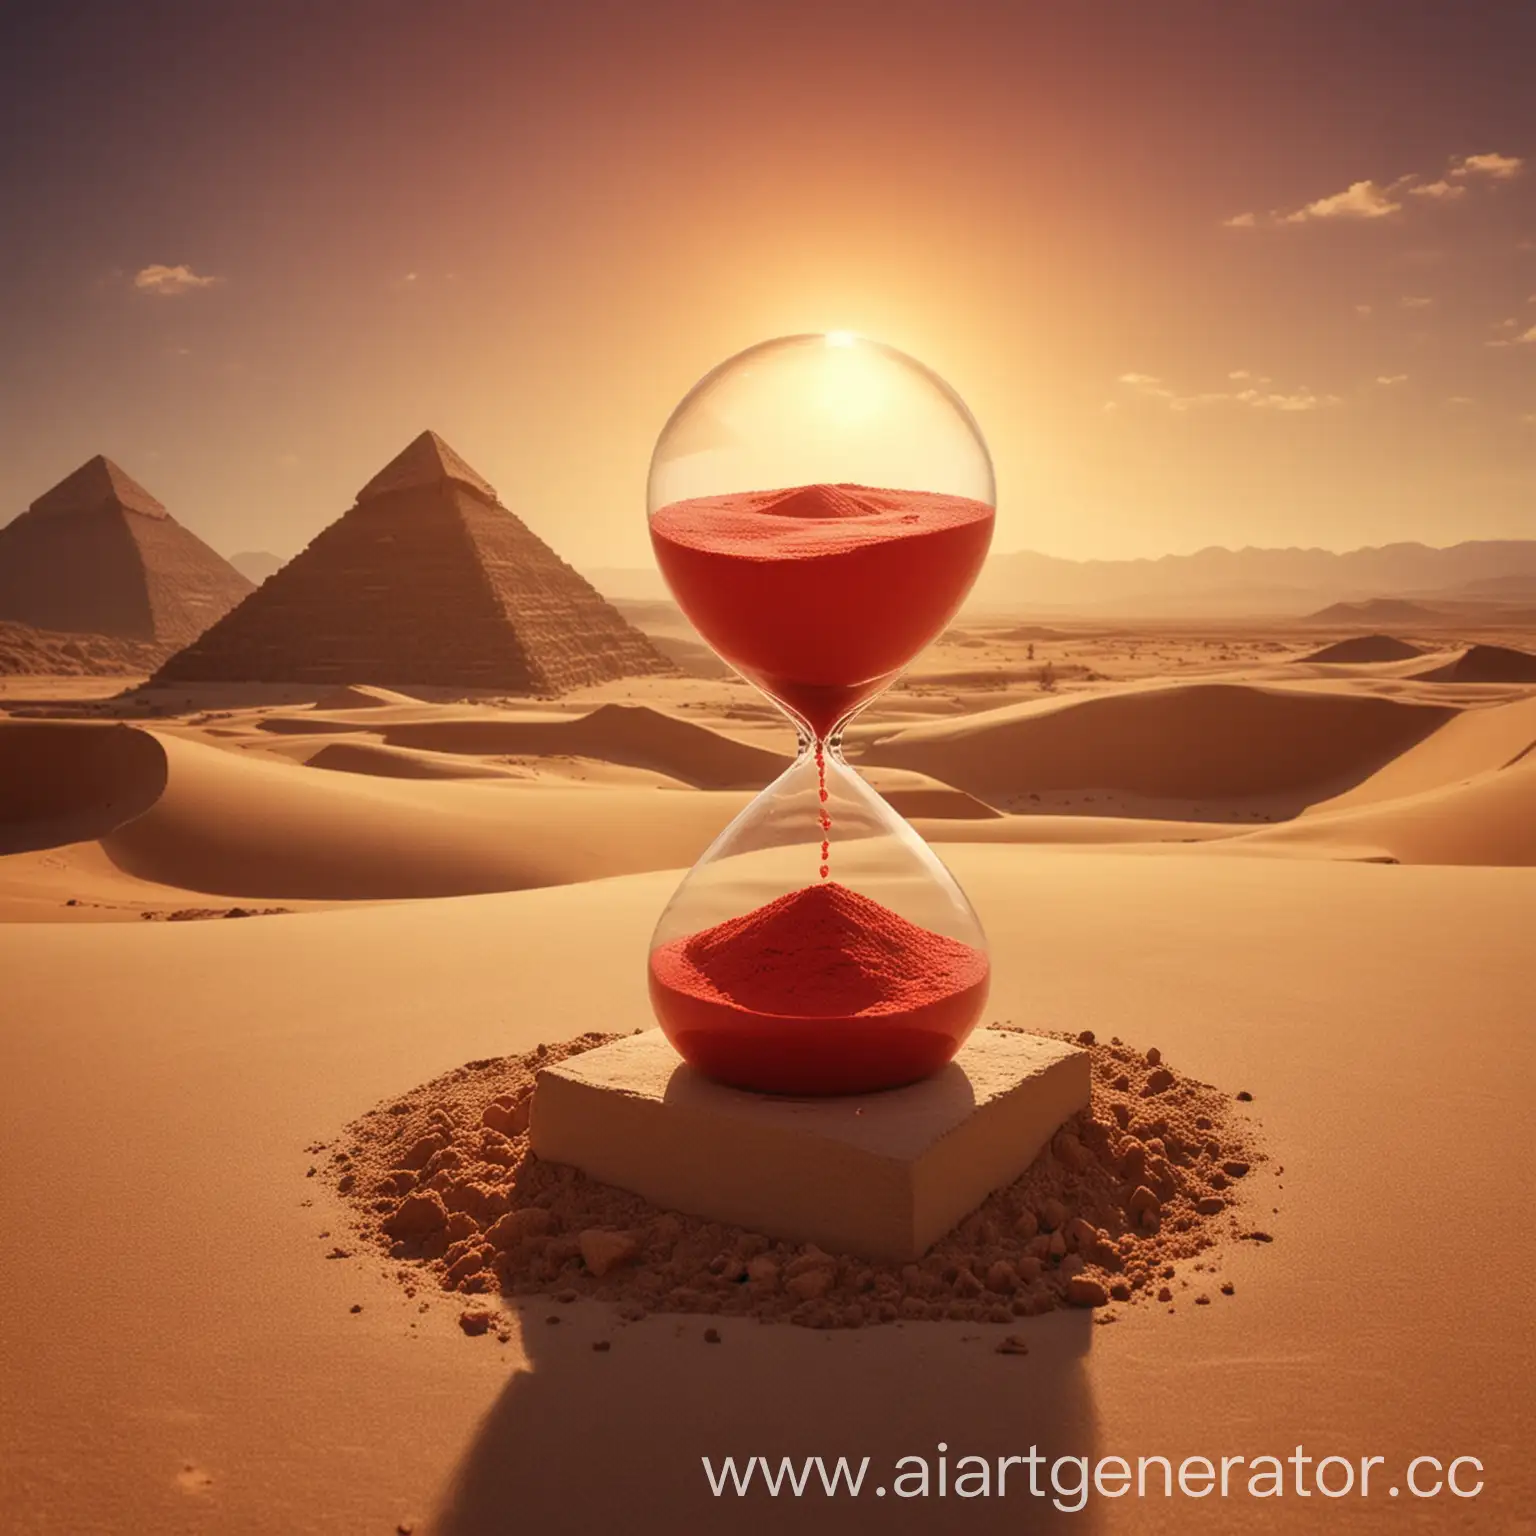 Пирамида, песочные часы от которых ветер, красное солнце и все это в пустыне.